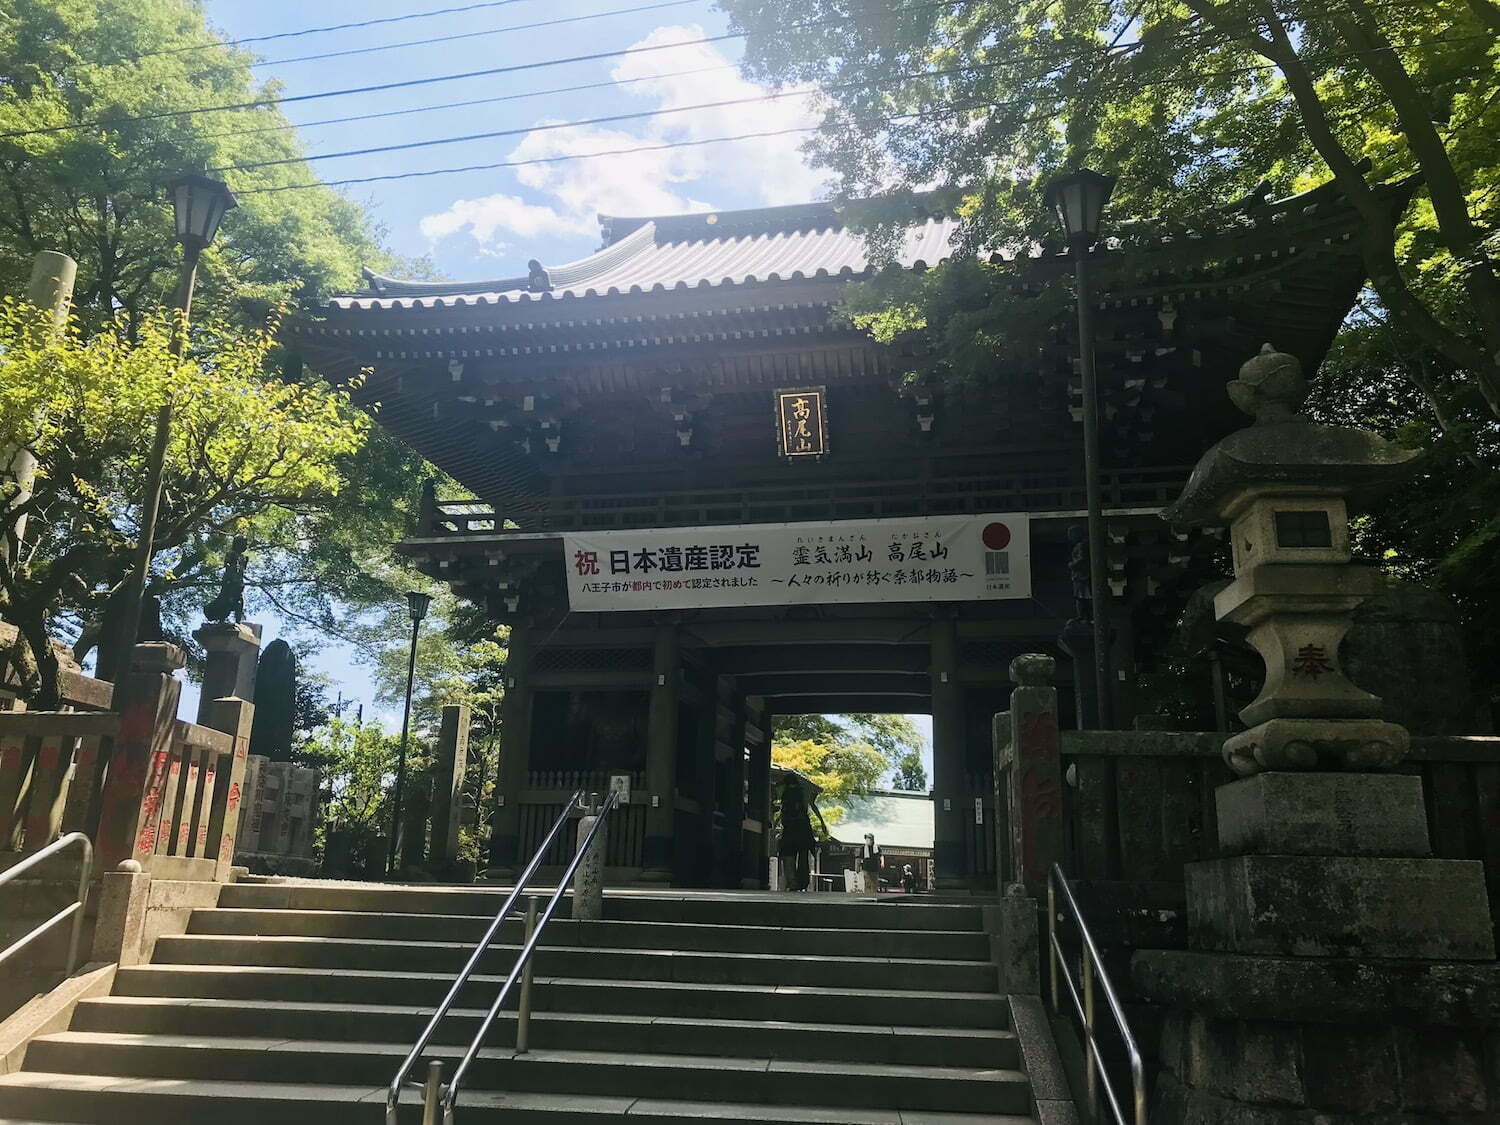 Takaosan temple